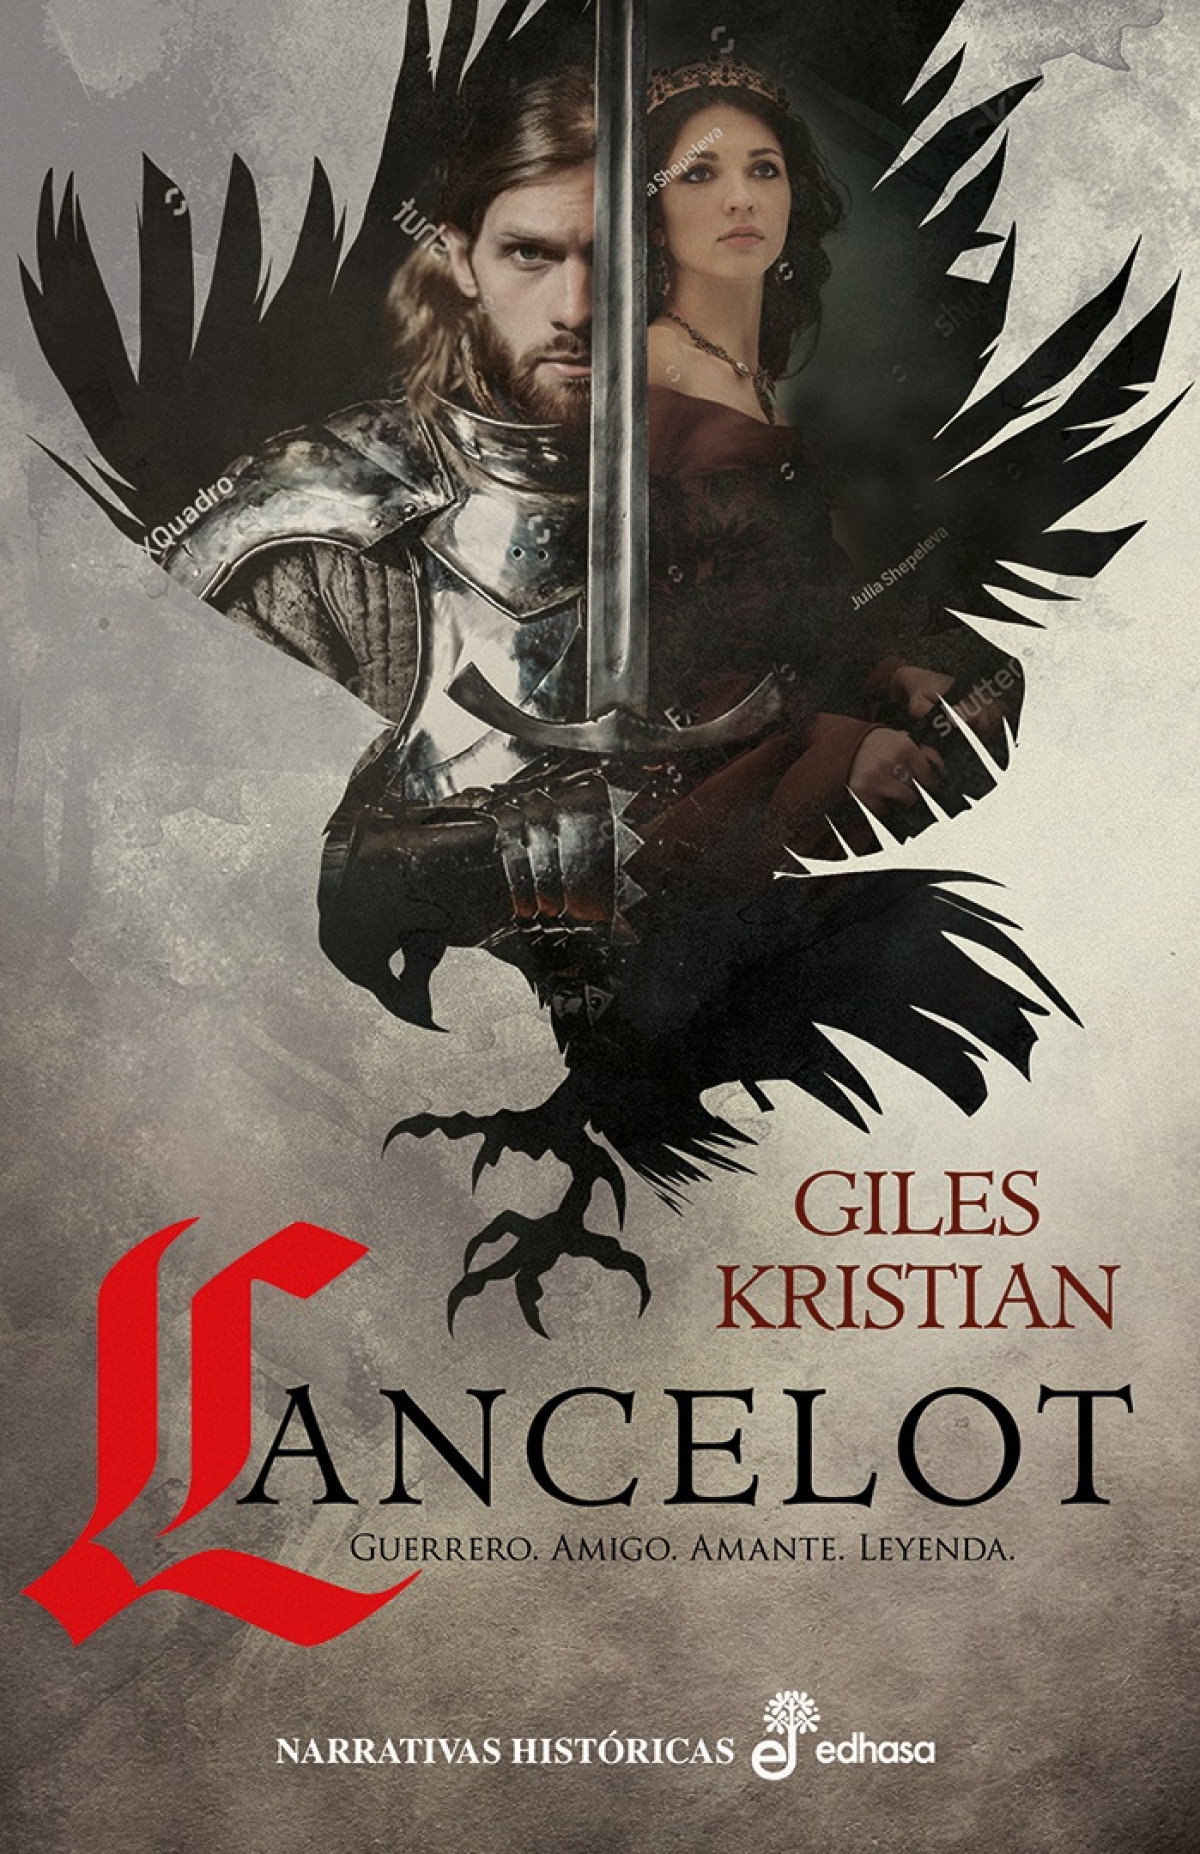 Lancelot Guerrero, amigo, amante, leyenda - Kristian, Giles